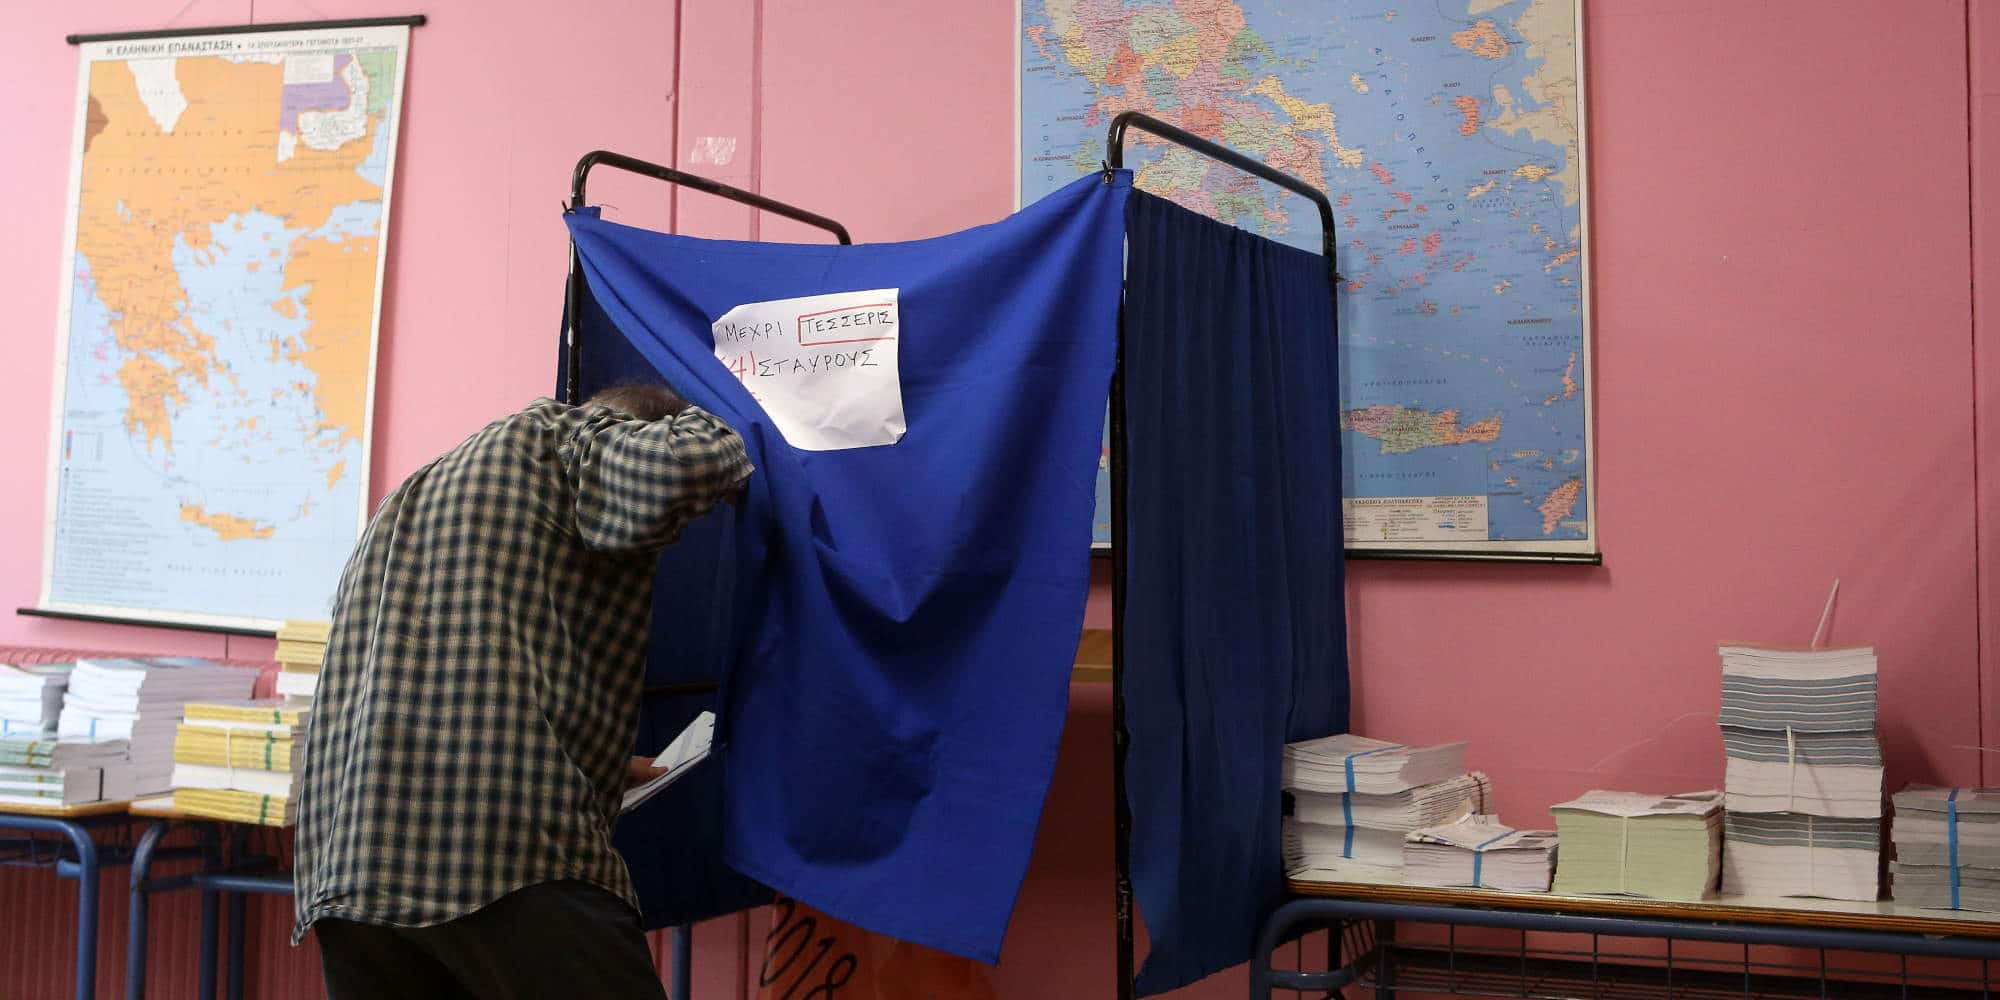 Εκλογές στην Ελλάδα, άνδρας σε παραβάν ανήμερα της εκλογικής αναμέτρησης / Φωτογραφία: Eurokinissi